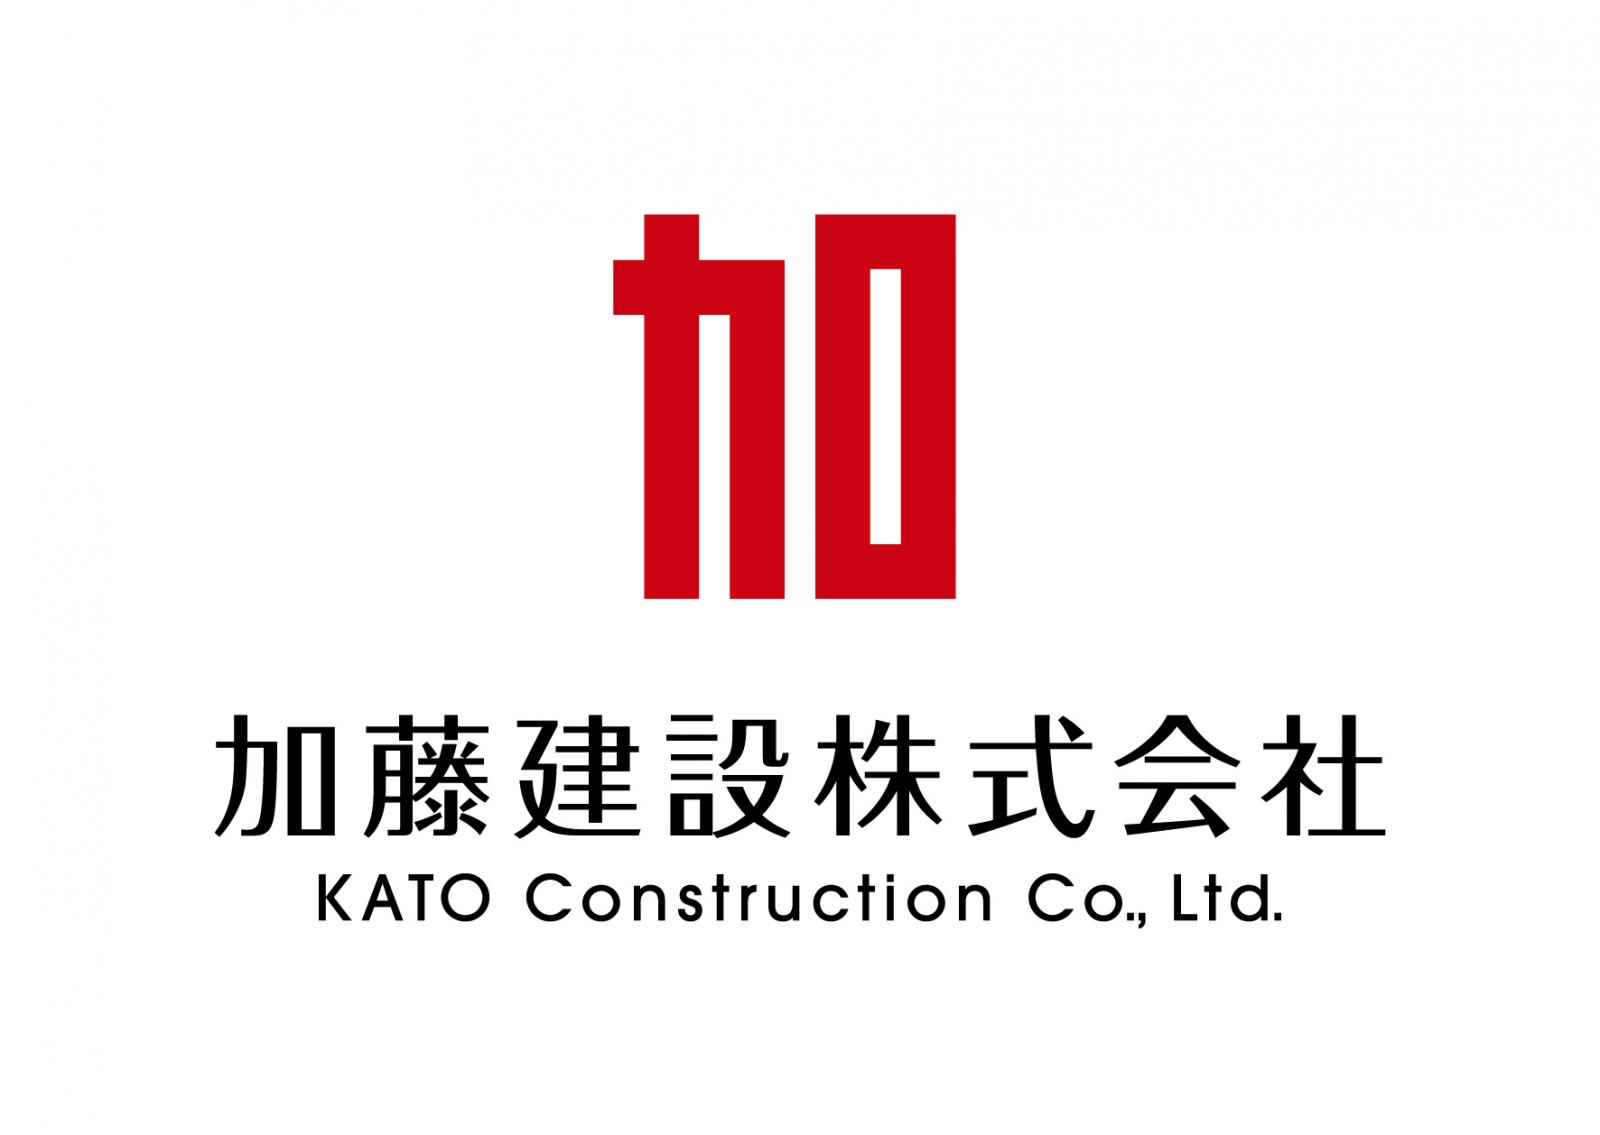 ロゴ:加藤建設株式会社